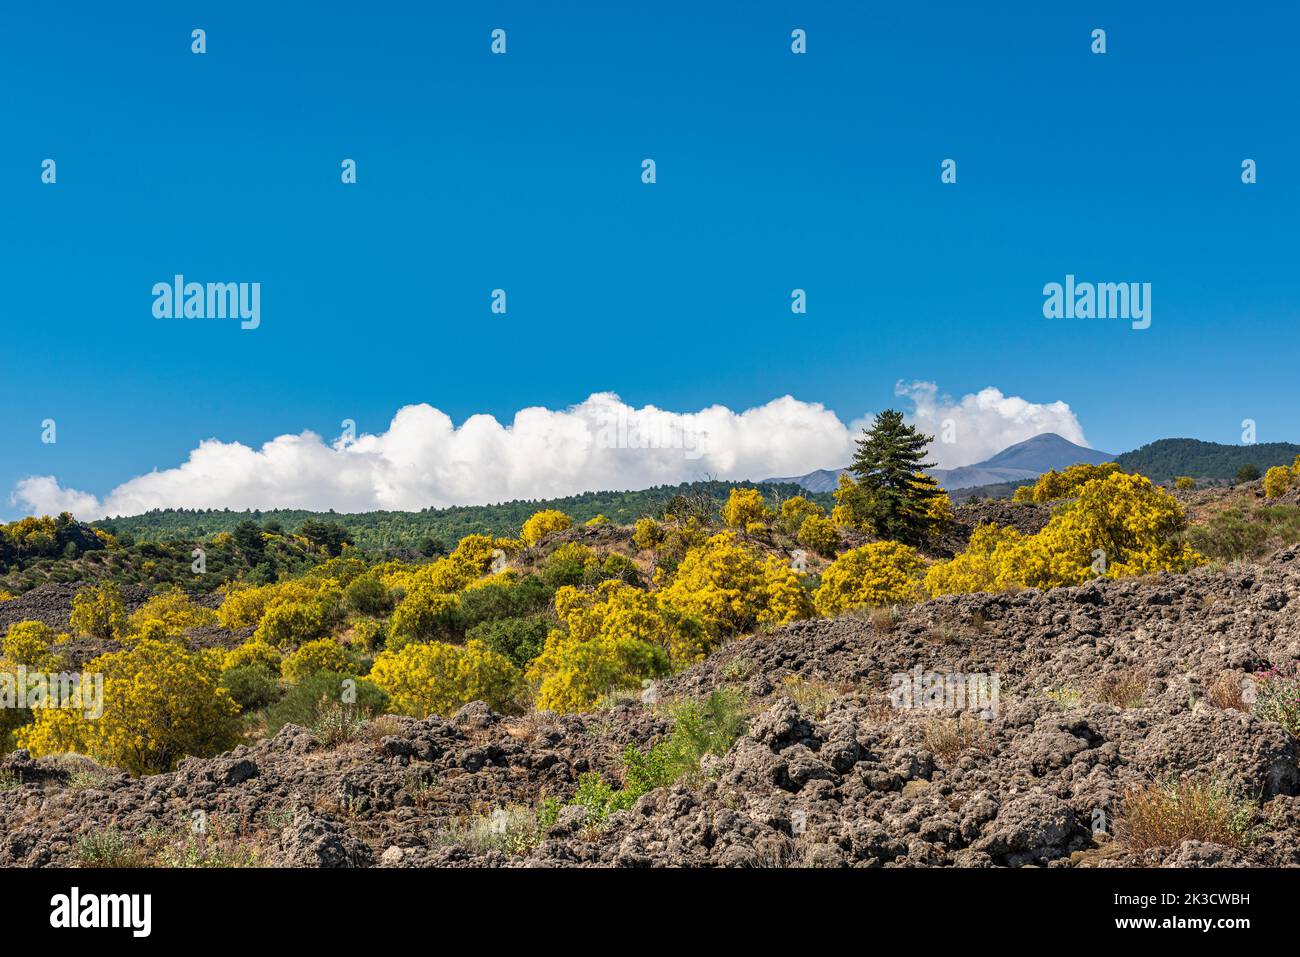 Le balai de l'Etna (Genista aetnensis) en fleur, une vue spectaculaire en été, qui s'accroît sur les pentes de lave du célèbre volcan sicilien Banque D'Images